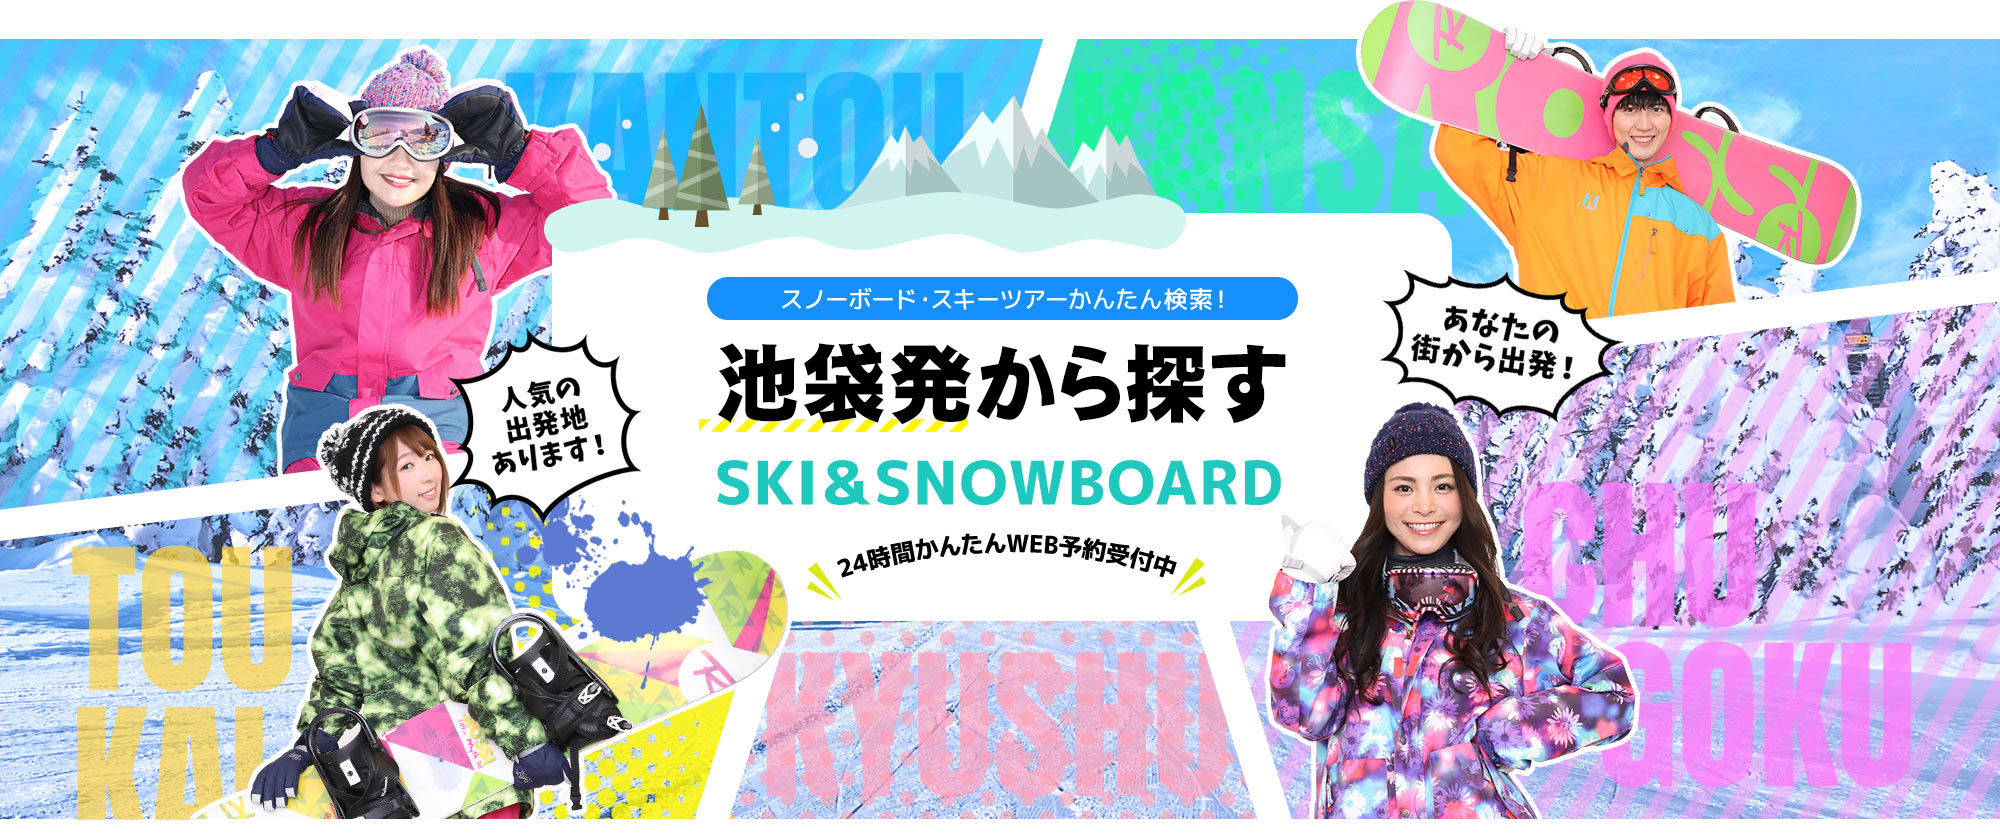 スノーボード・スキーツアーかんたん検索！ 池袋発から探す SKI&SNOWBOARD